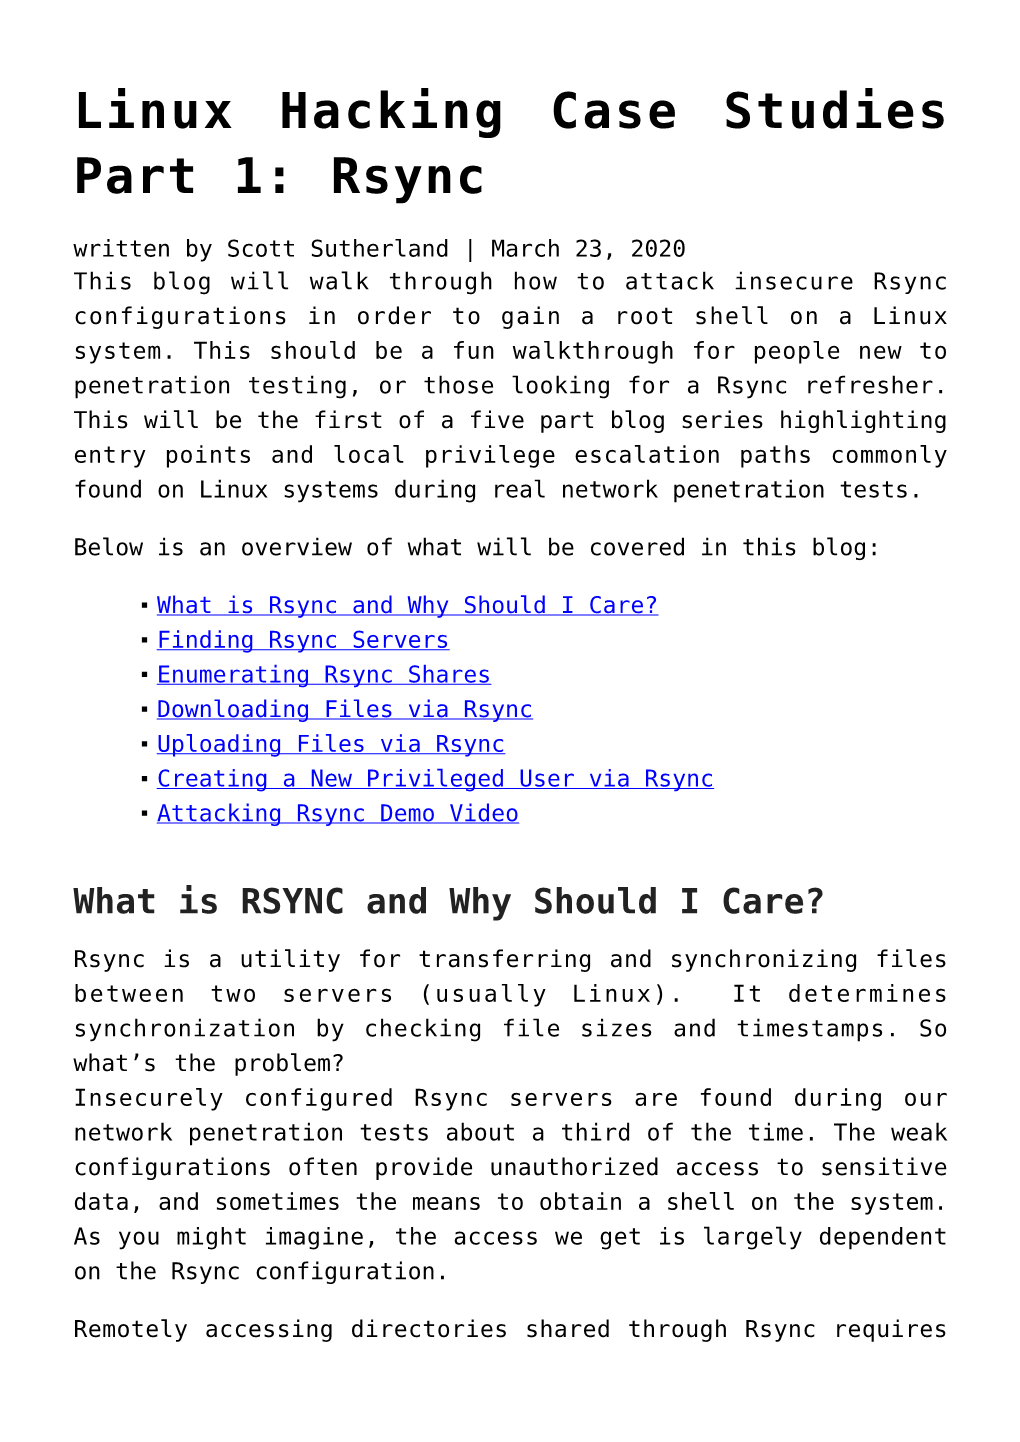 Linux Hacking Case Studies Part 1: Rsync